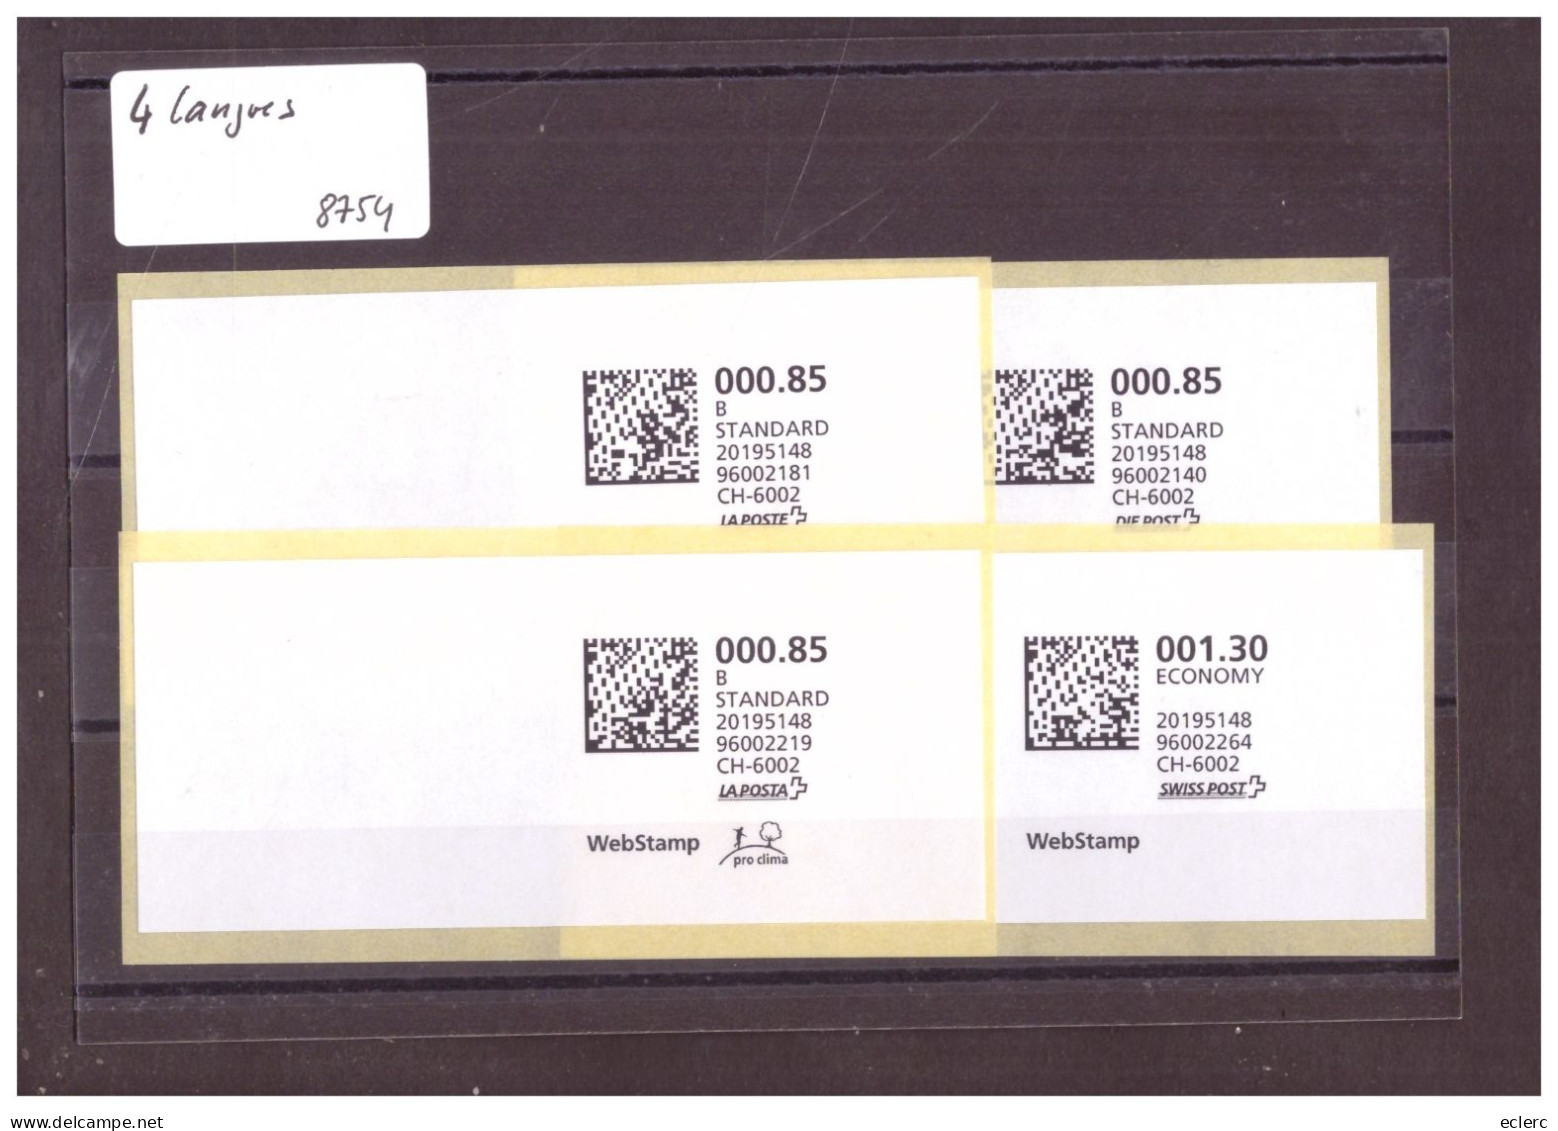 4 WEB STAMPS - ETIQUETTES EN 4 LANGUES ( FR. D. IT. GB ) - Automatic Stamps